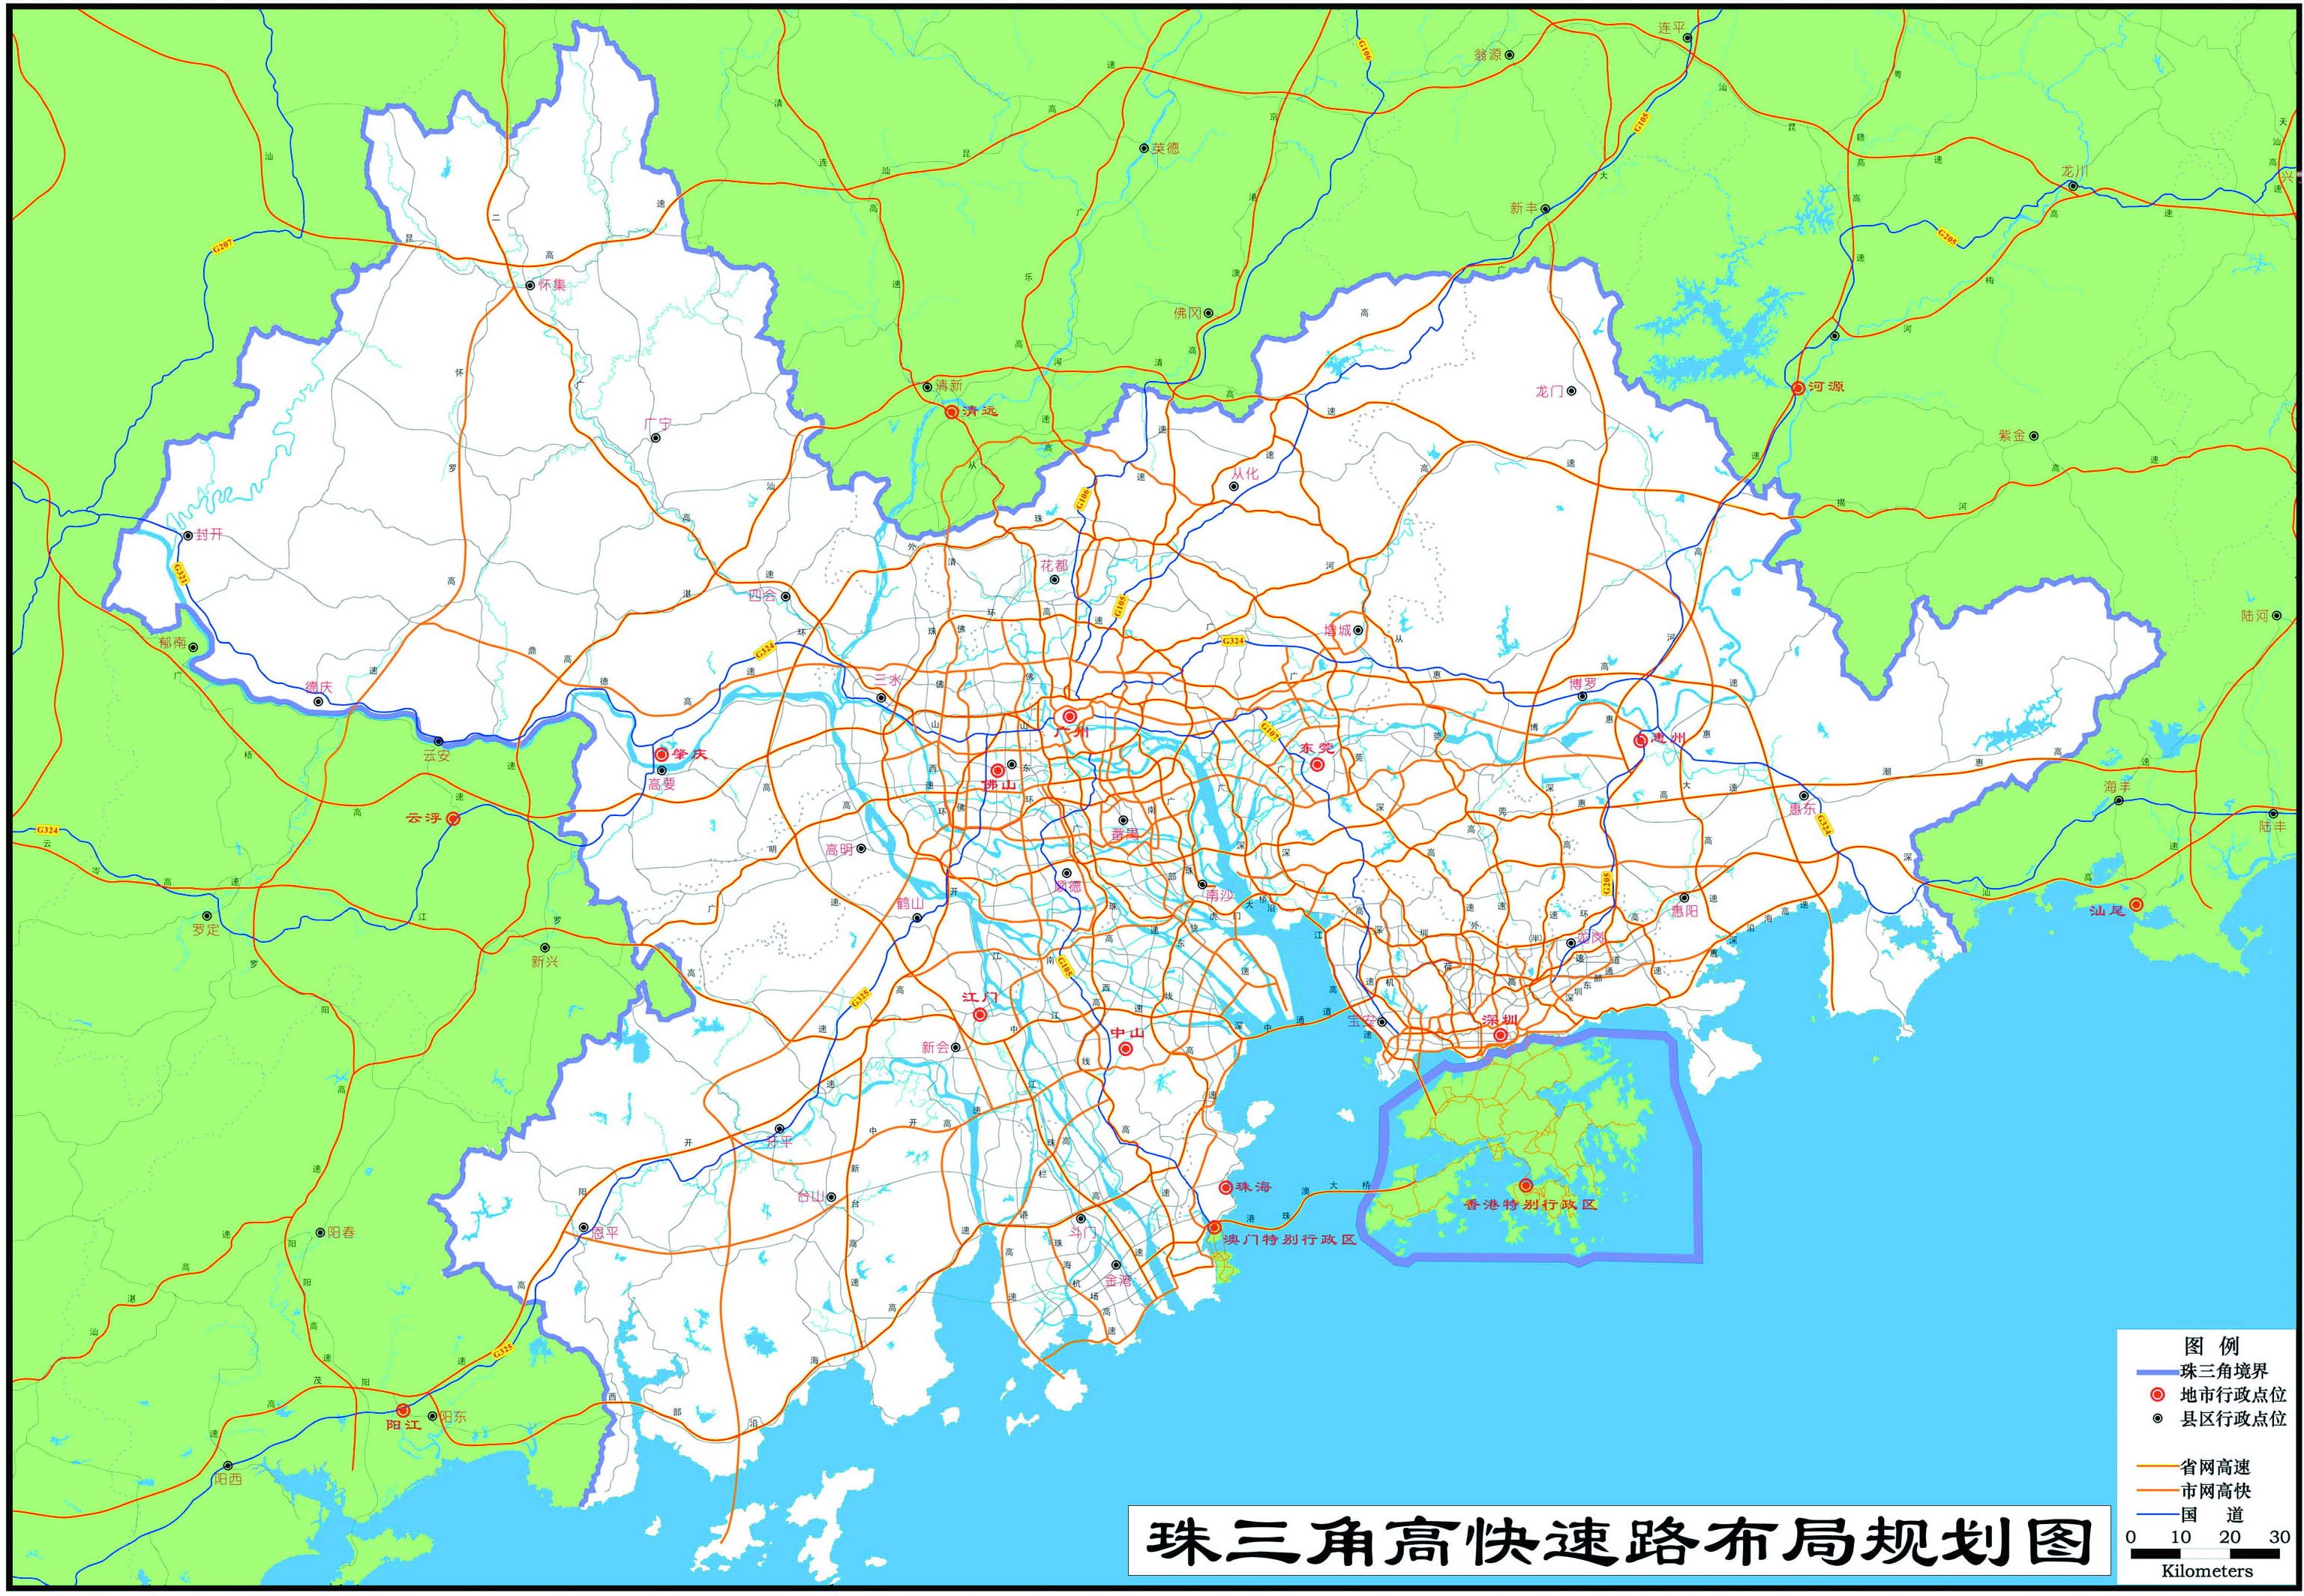 珠江三角洲高快速路布局规划图_广东地图库_地图窝图片